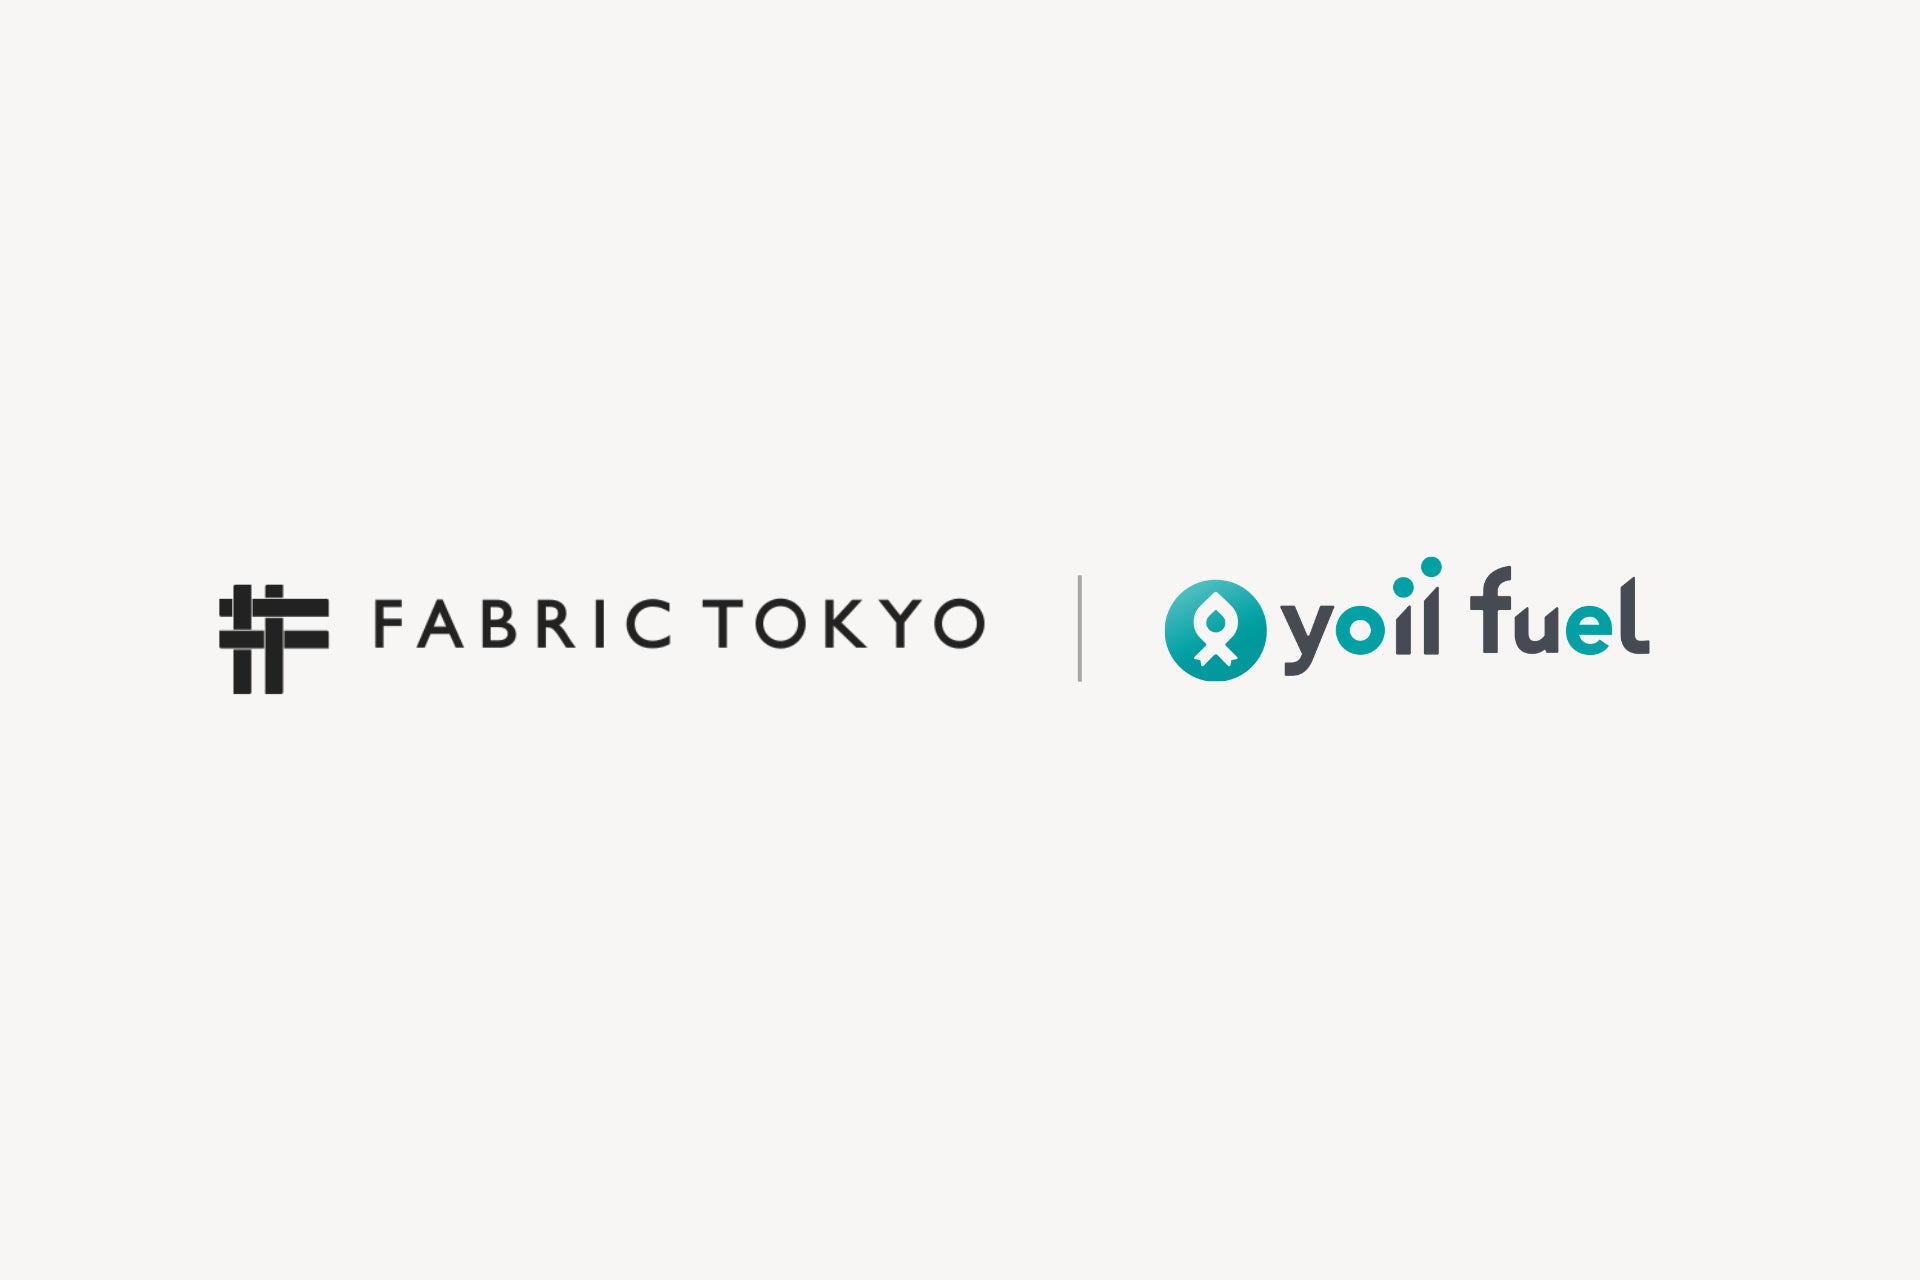 カスタムアパレルブランドを運営する株式会社FABRIC TOKYOが、レベニュー・ベースド・ファイナンスの「Yoii Fuel」にて資金調達を実施